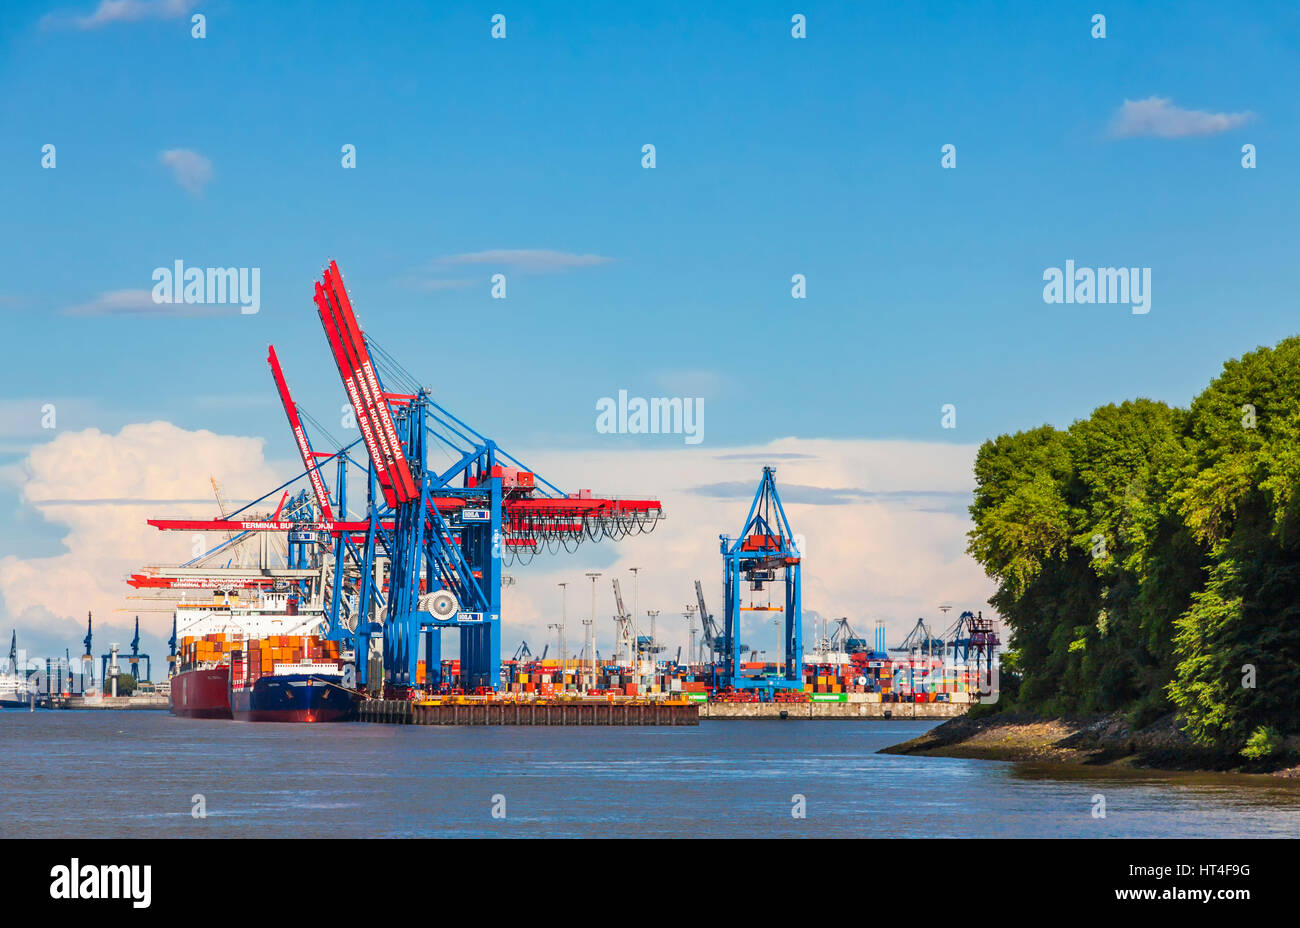 Amburgo, Germania - 25 giugno 2014: banchine del porto di Amburgo (Hamburger Hafen) sul fiume Elba, Germania. Il porto più grande in Germania e uno dei bu Foto Stock